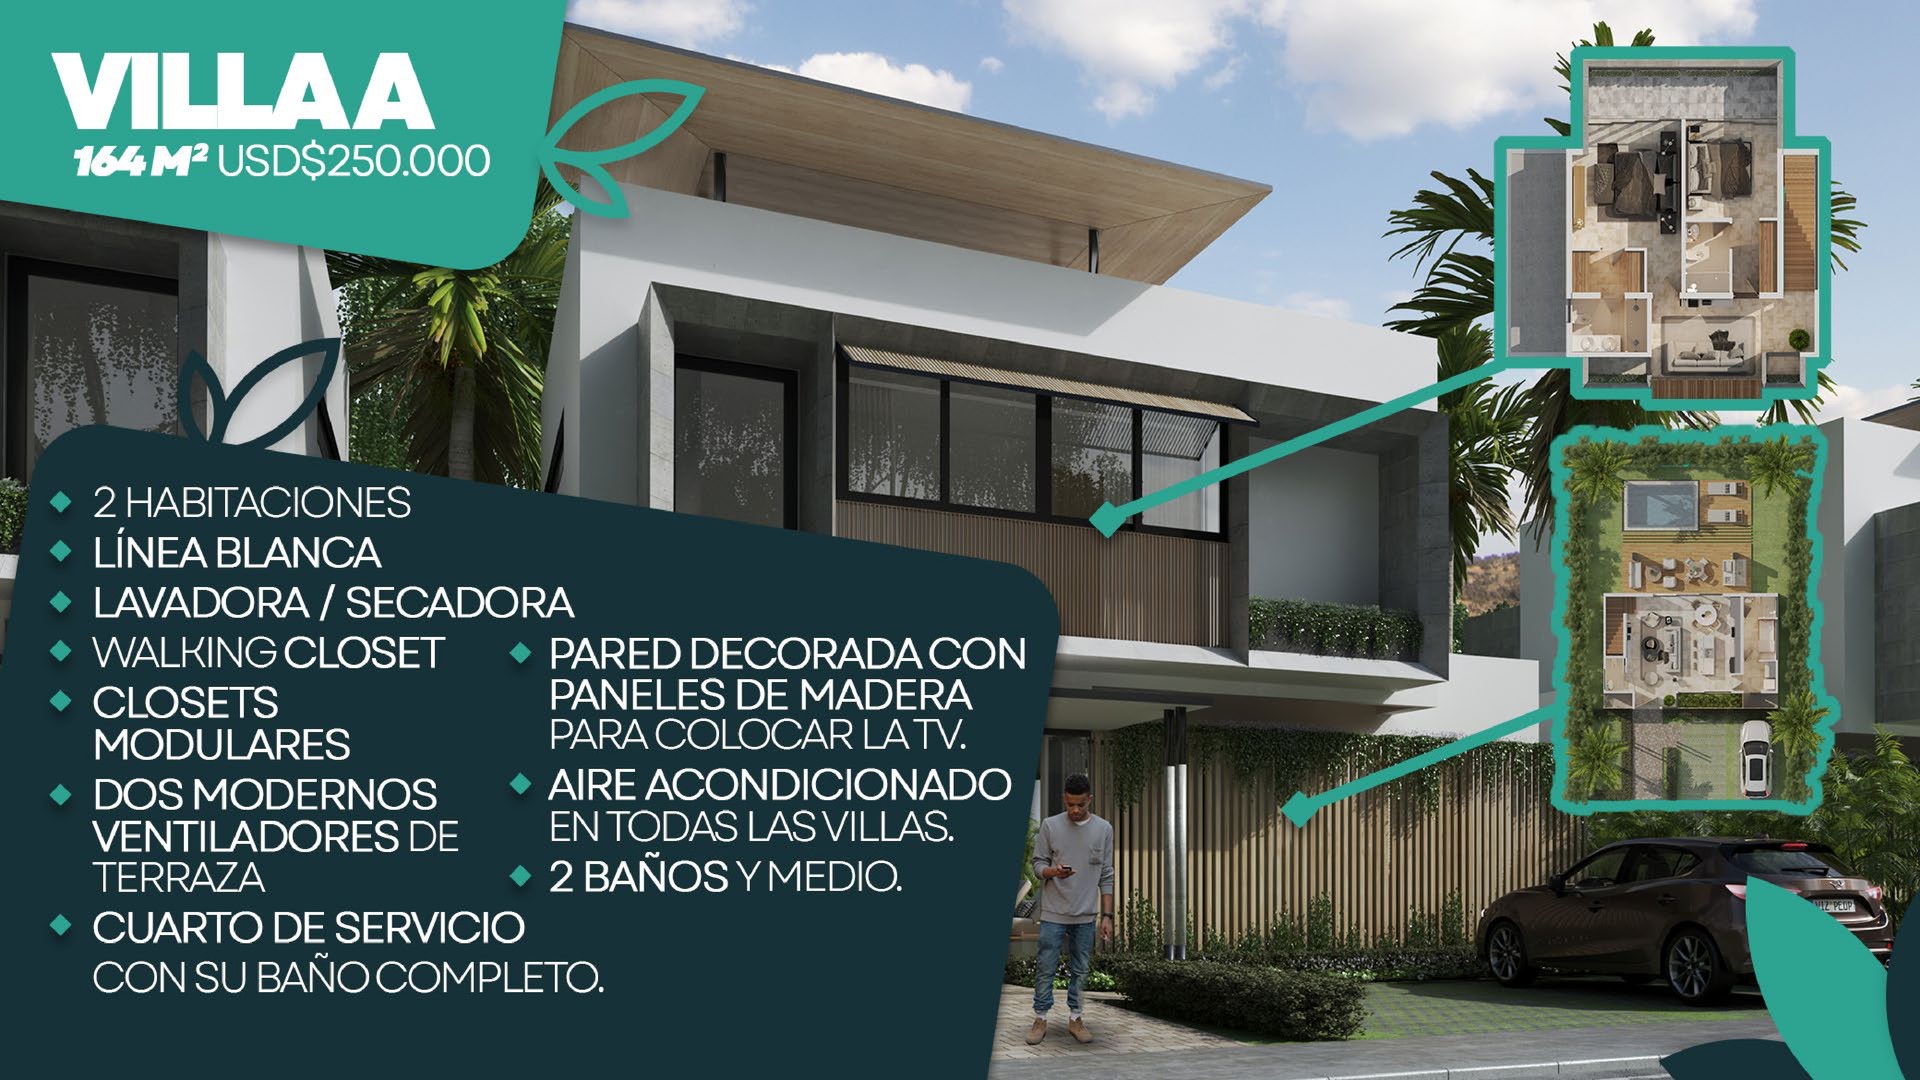 casas vacacionales y villas - Hermoso Proyecto En Construccion En Punta Cana, Villas De 2 Y 3 Hab.  0